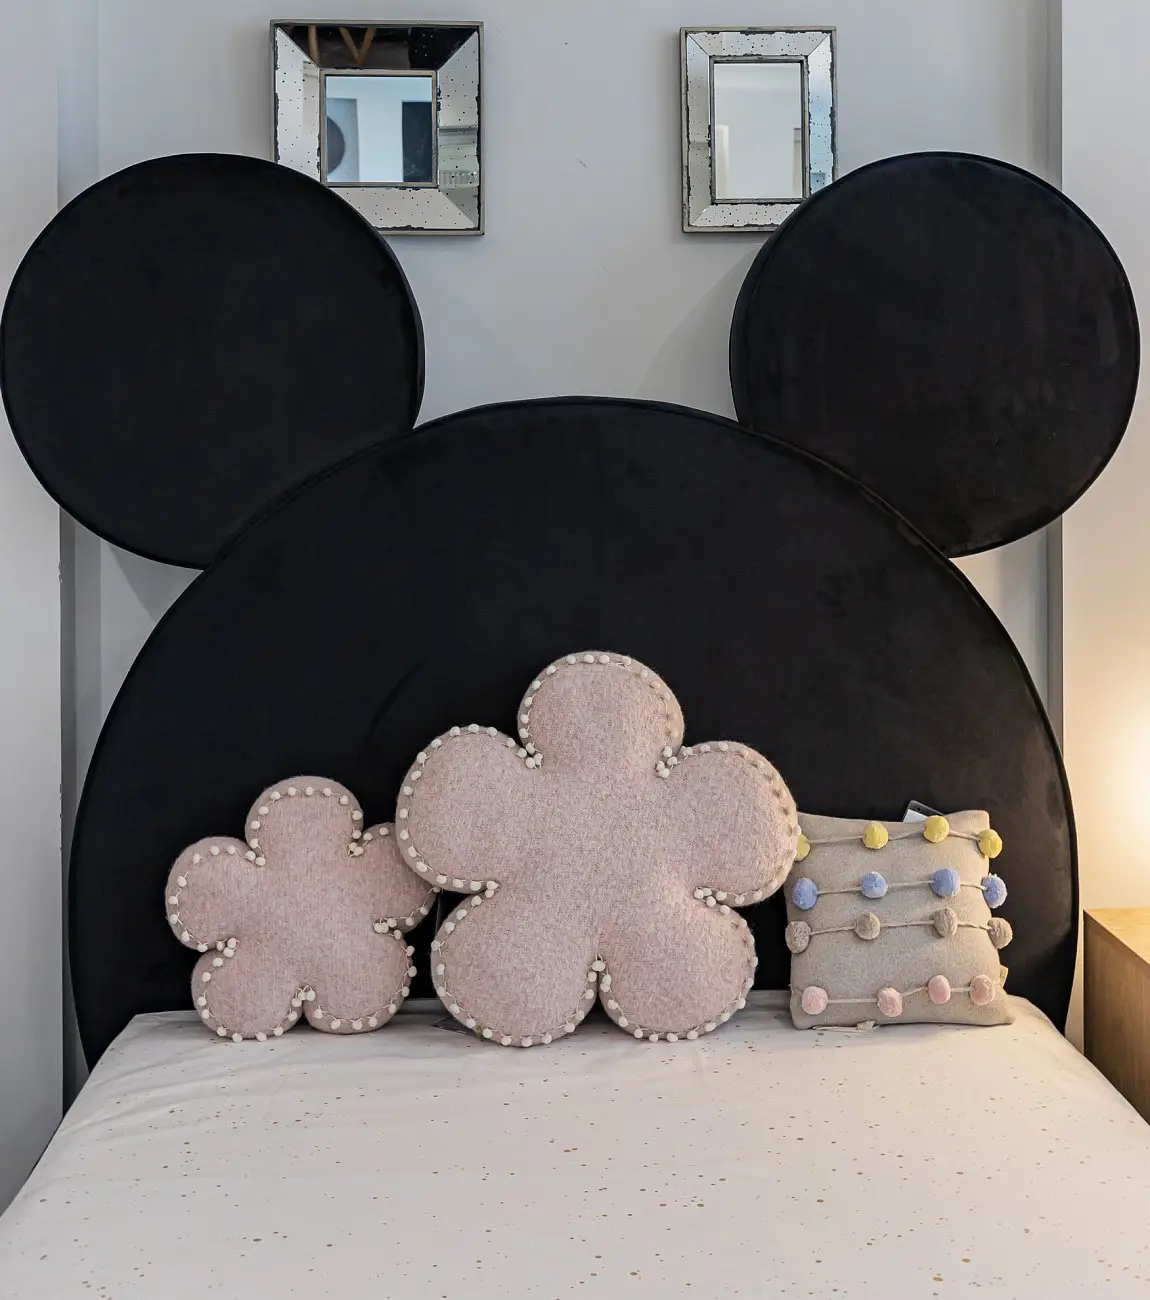 Кровать детская односпальная 120х200 см черная Mickey Mouse